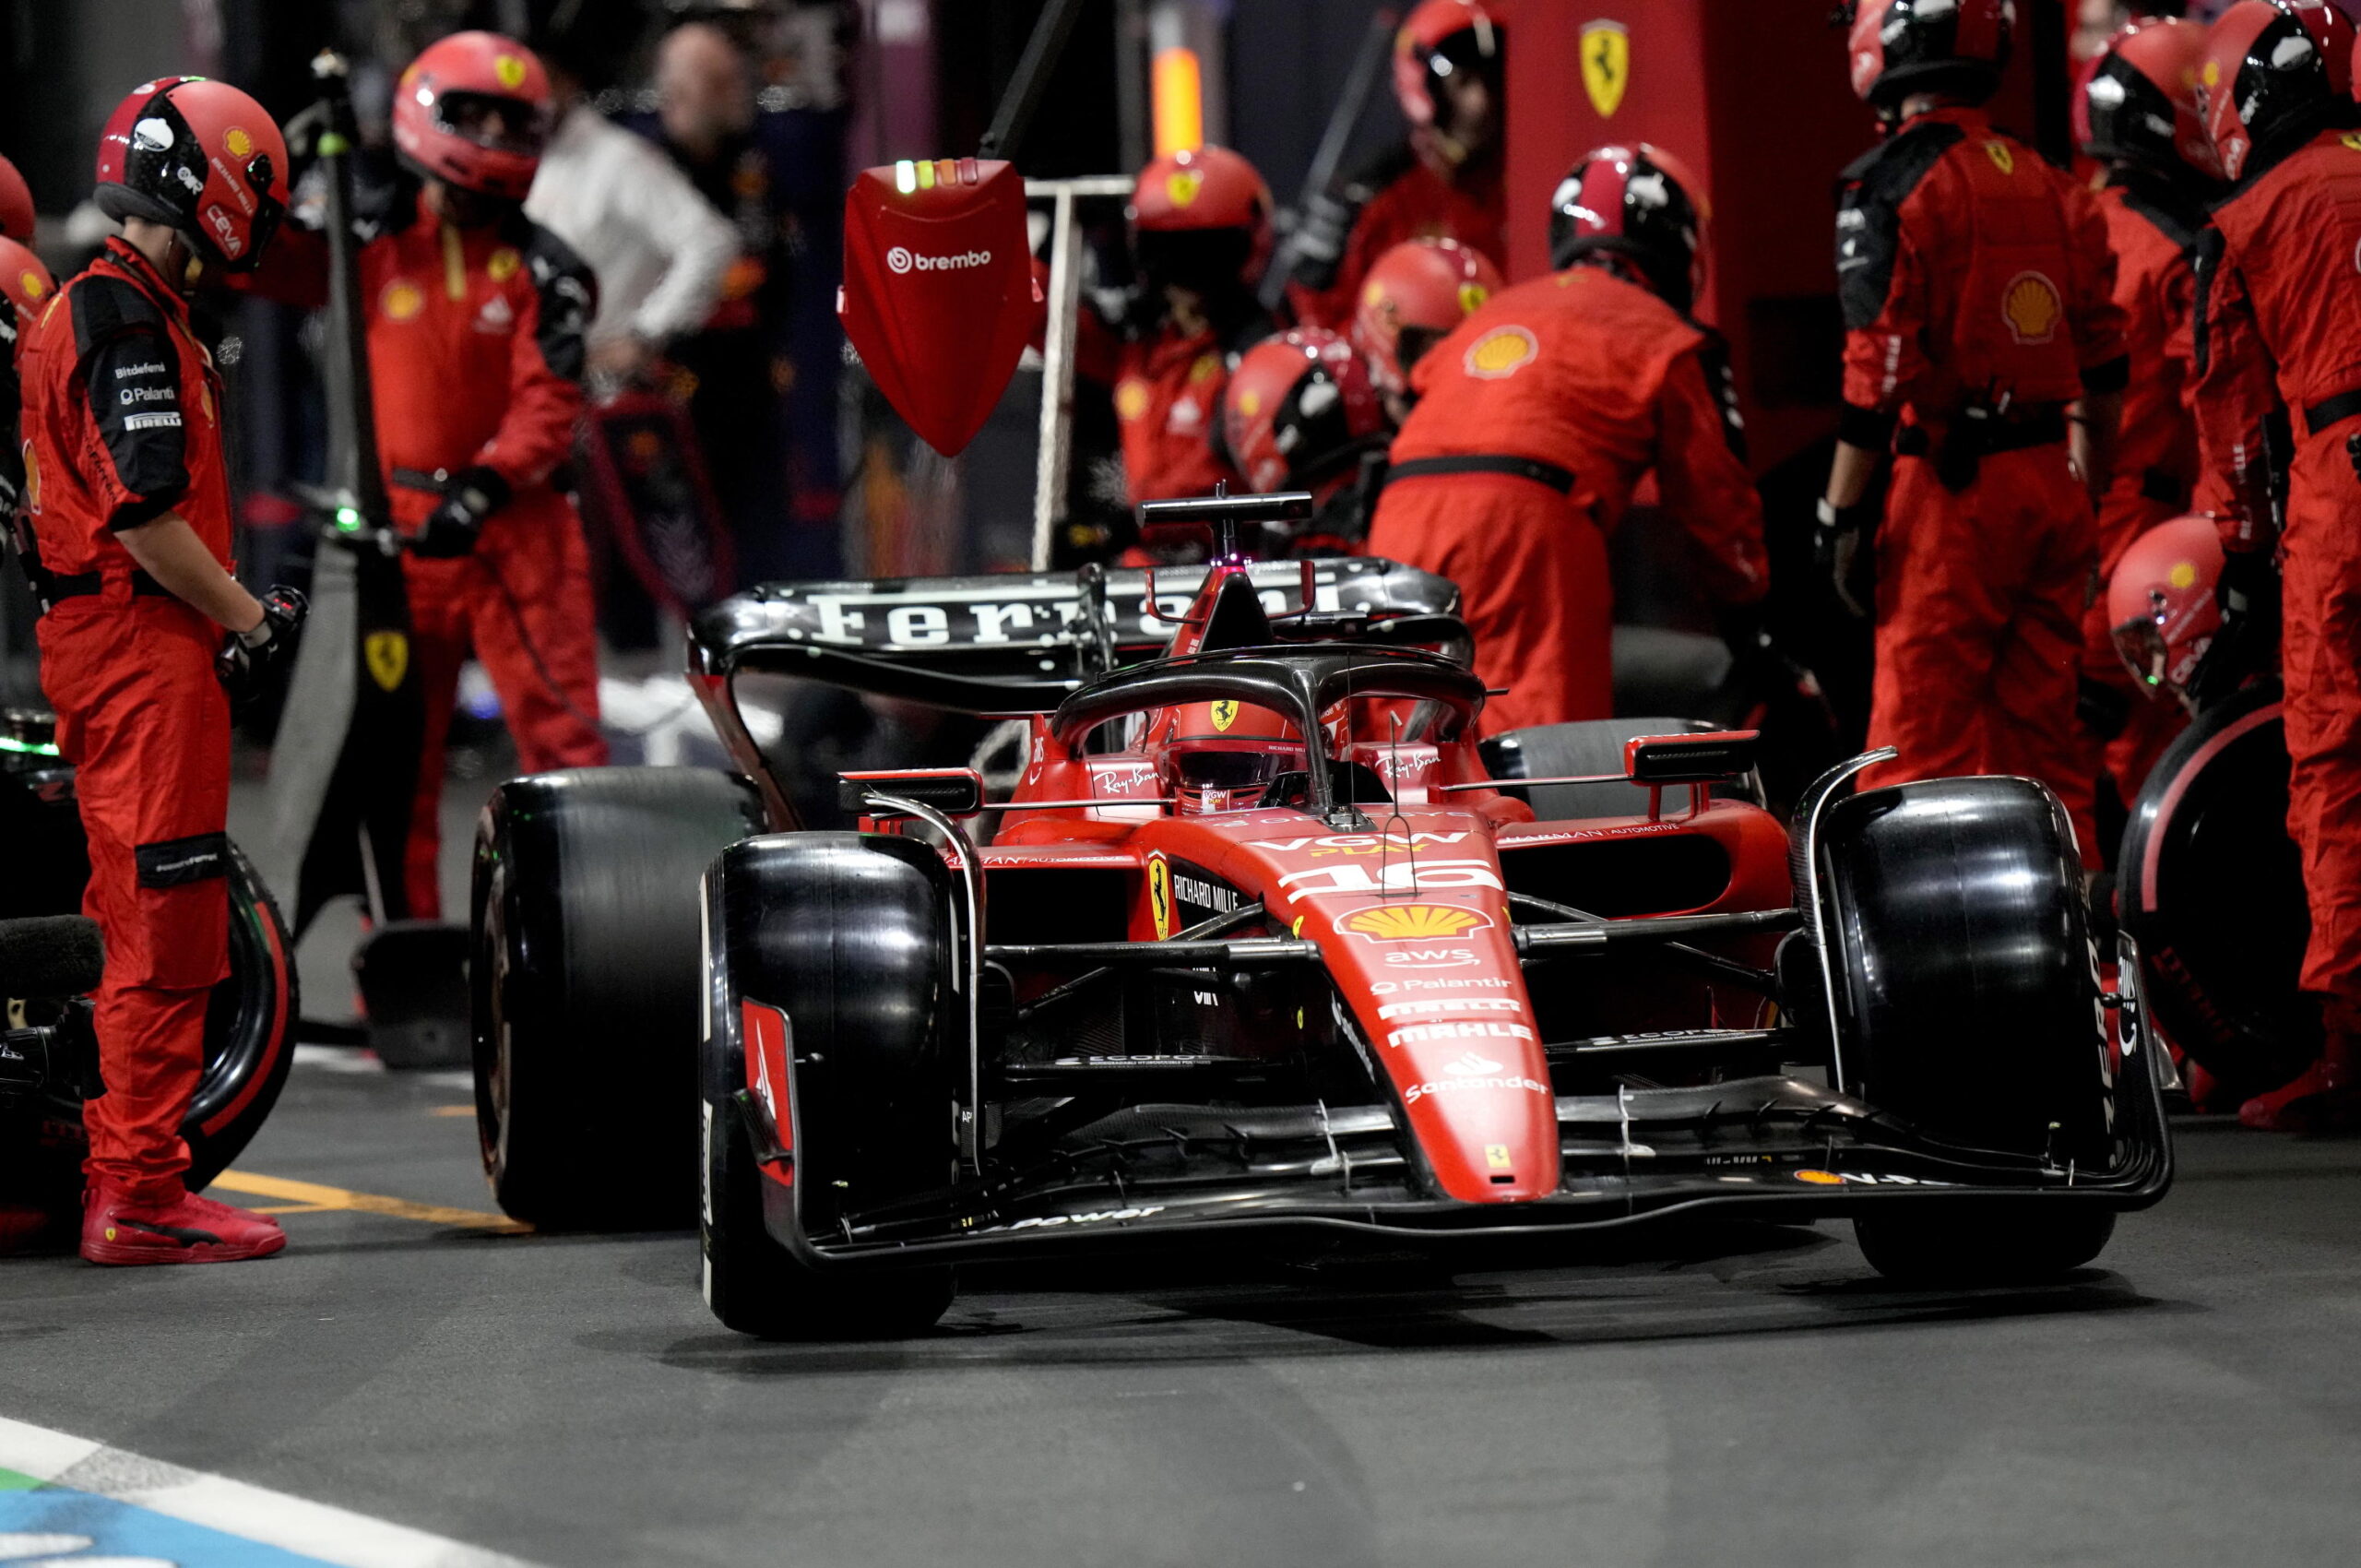 Attacco hacker a Ferrari, in pericolo i dati dei clienti: “Non pagheremo il riscatto”